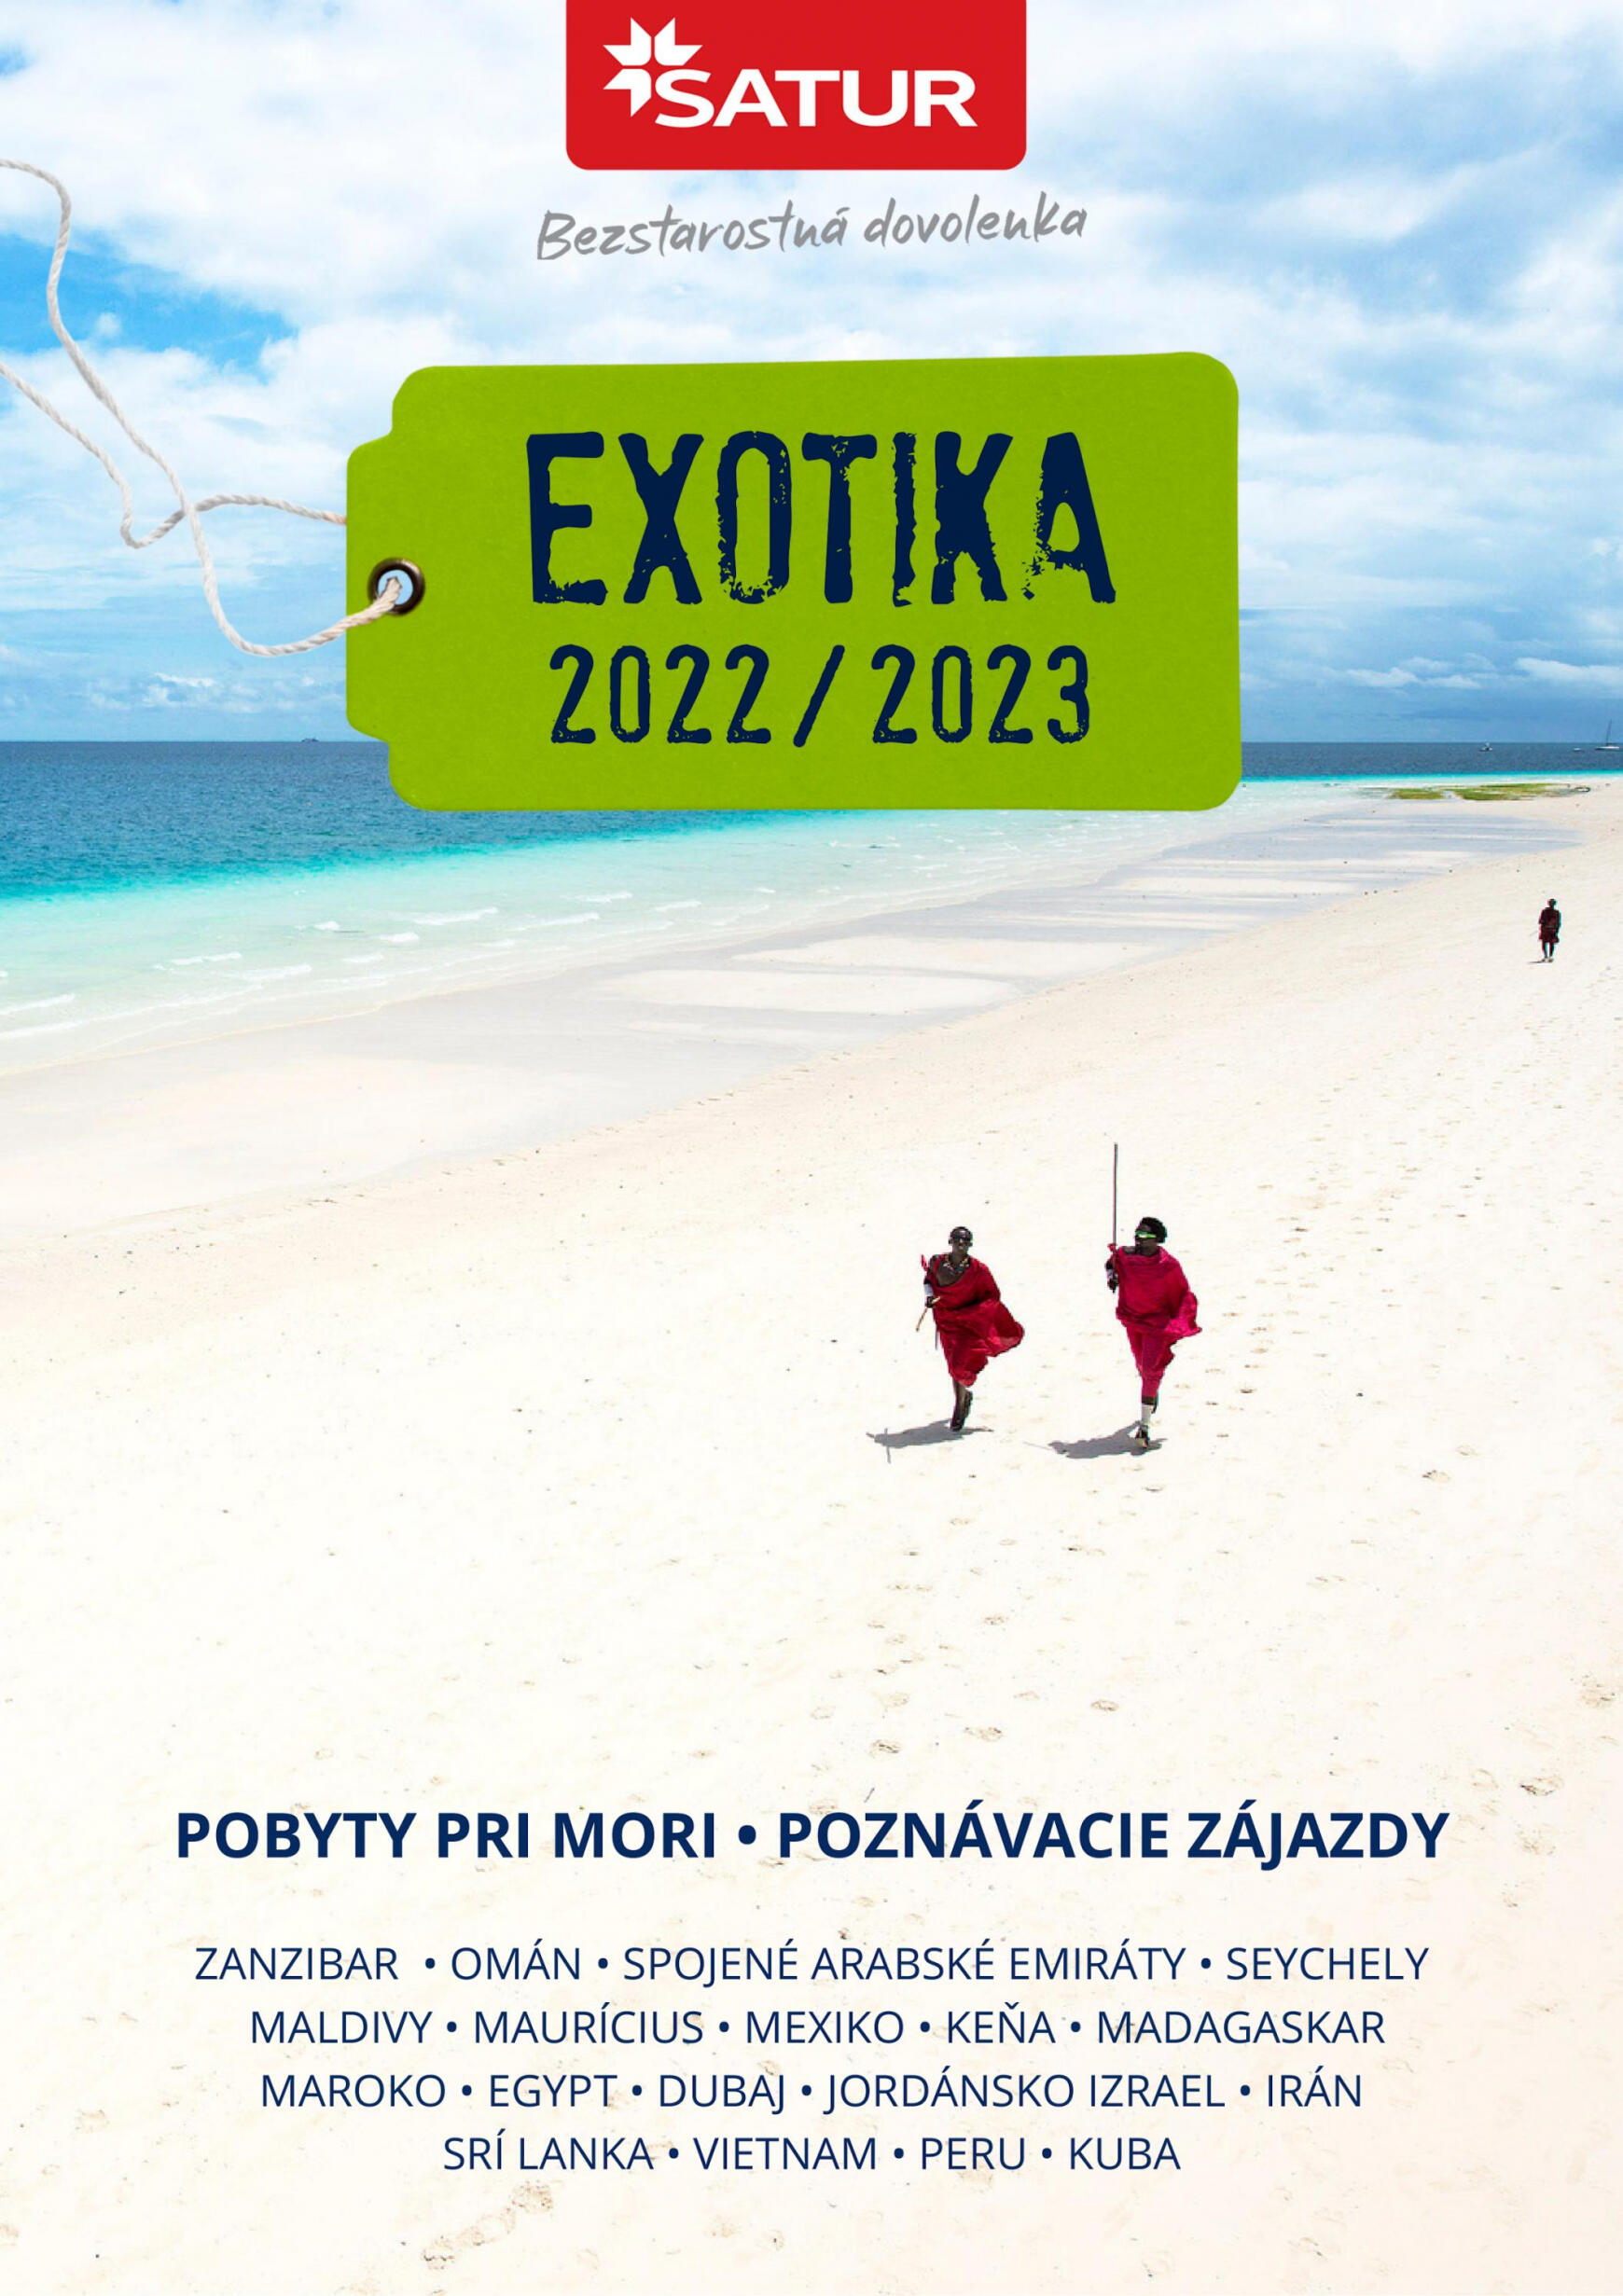 satur-sk - Satur - Exotika 2022/2023